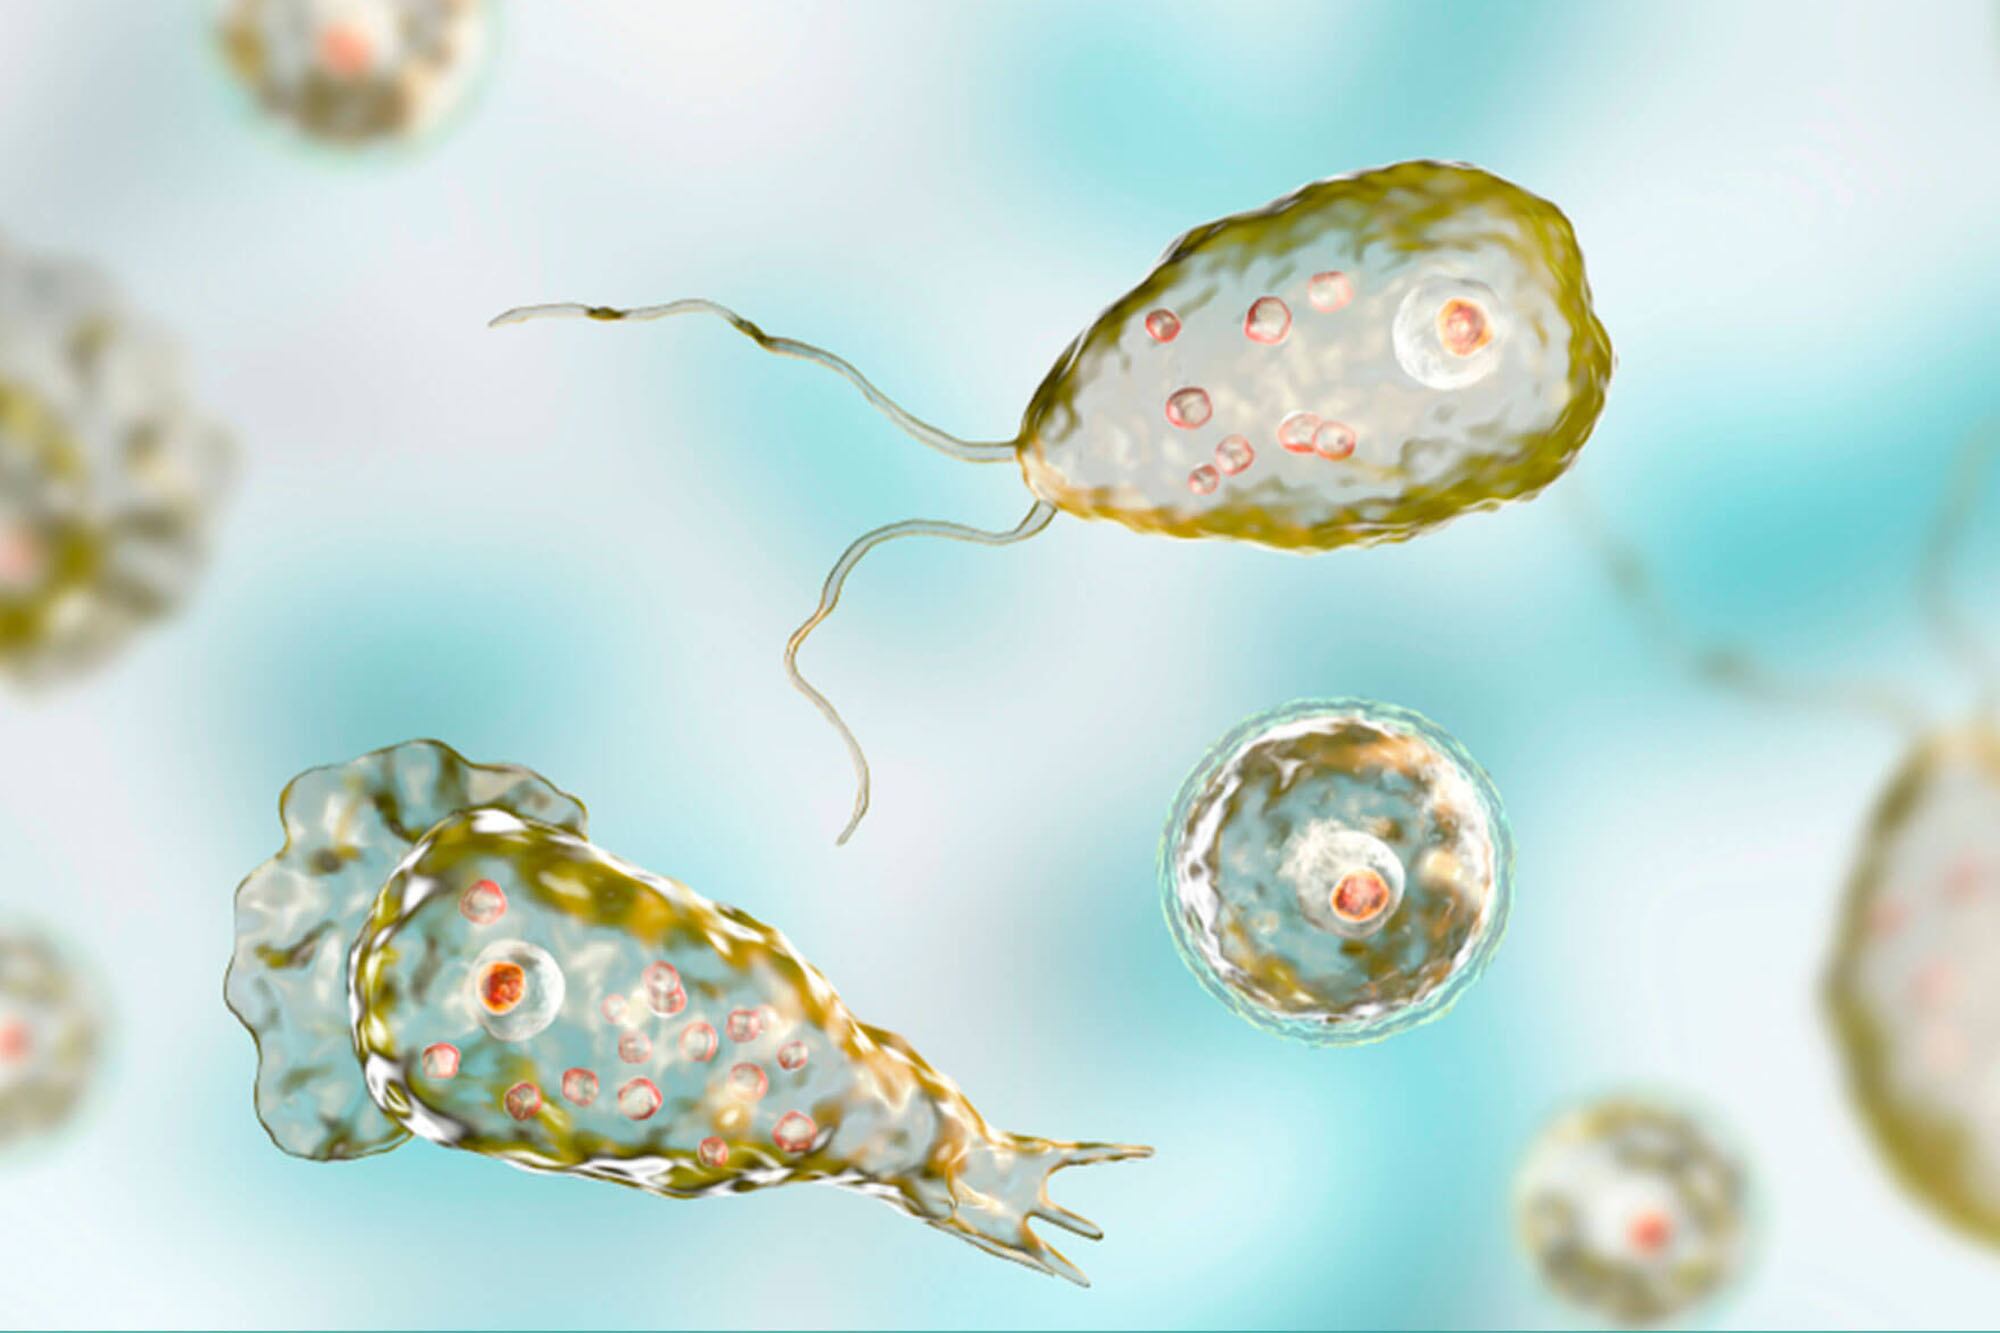 Los parásitos son organismos más complejos que las bacterias; algunos puede ser microscópicos, mientras que otros pueden ser vistos por el ojo humano